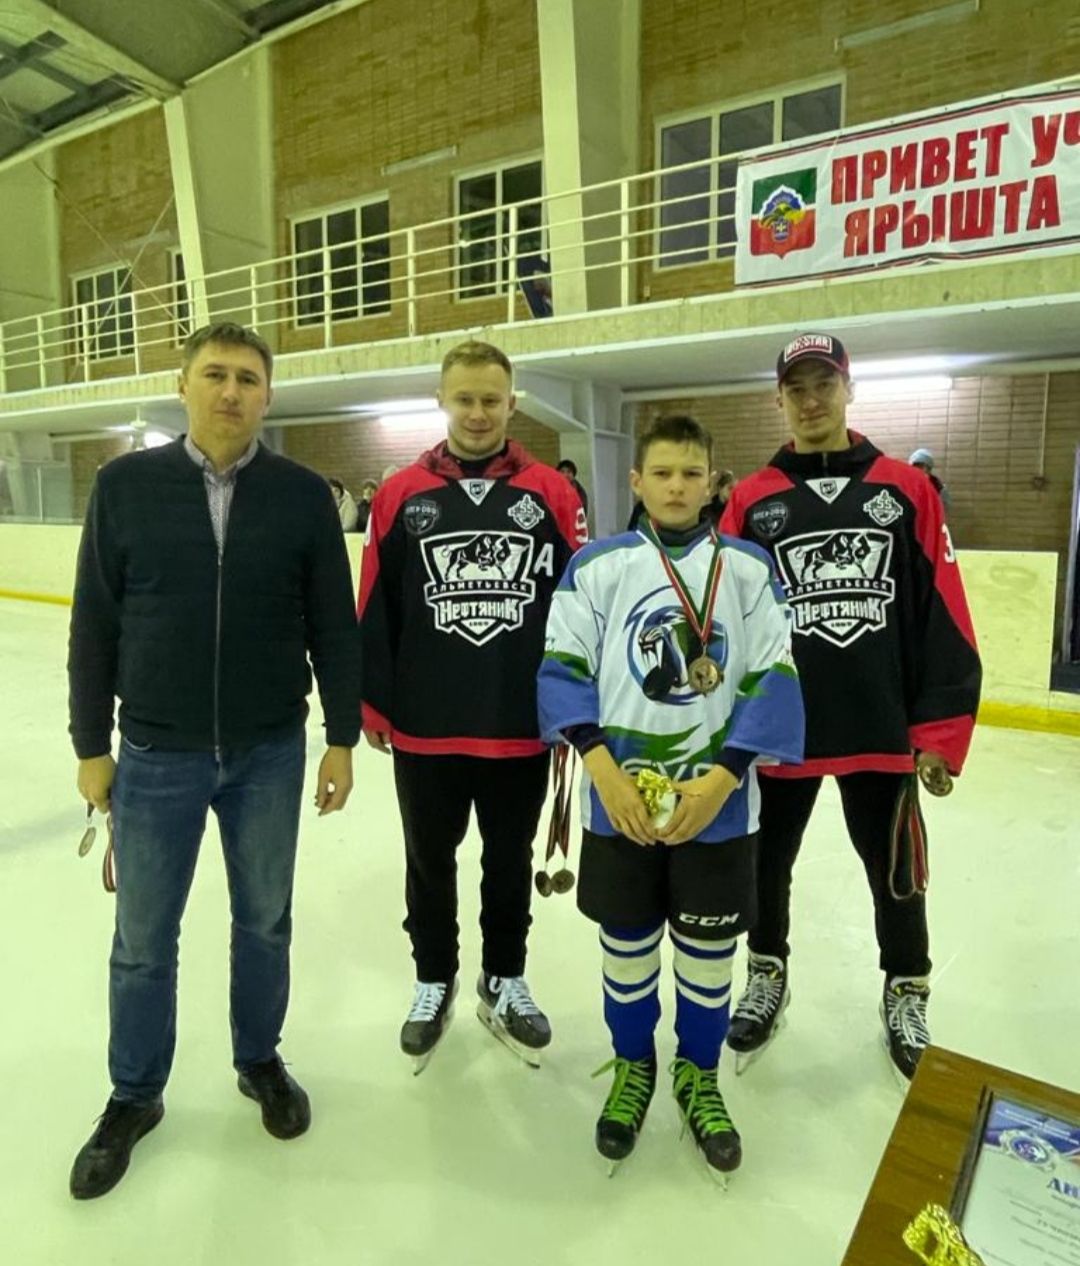 Юный хоккеист Бавлов: «Буду очень стараться, чтобы в будущем стать известным хоккеистом»